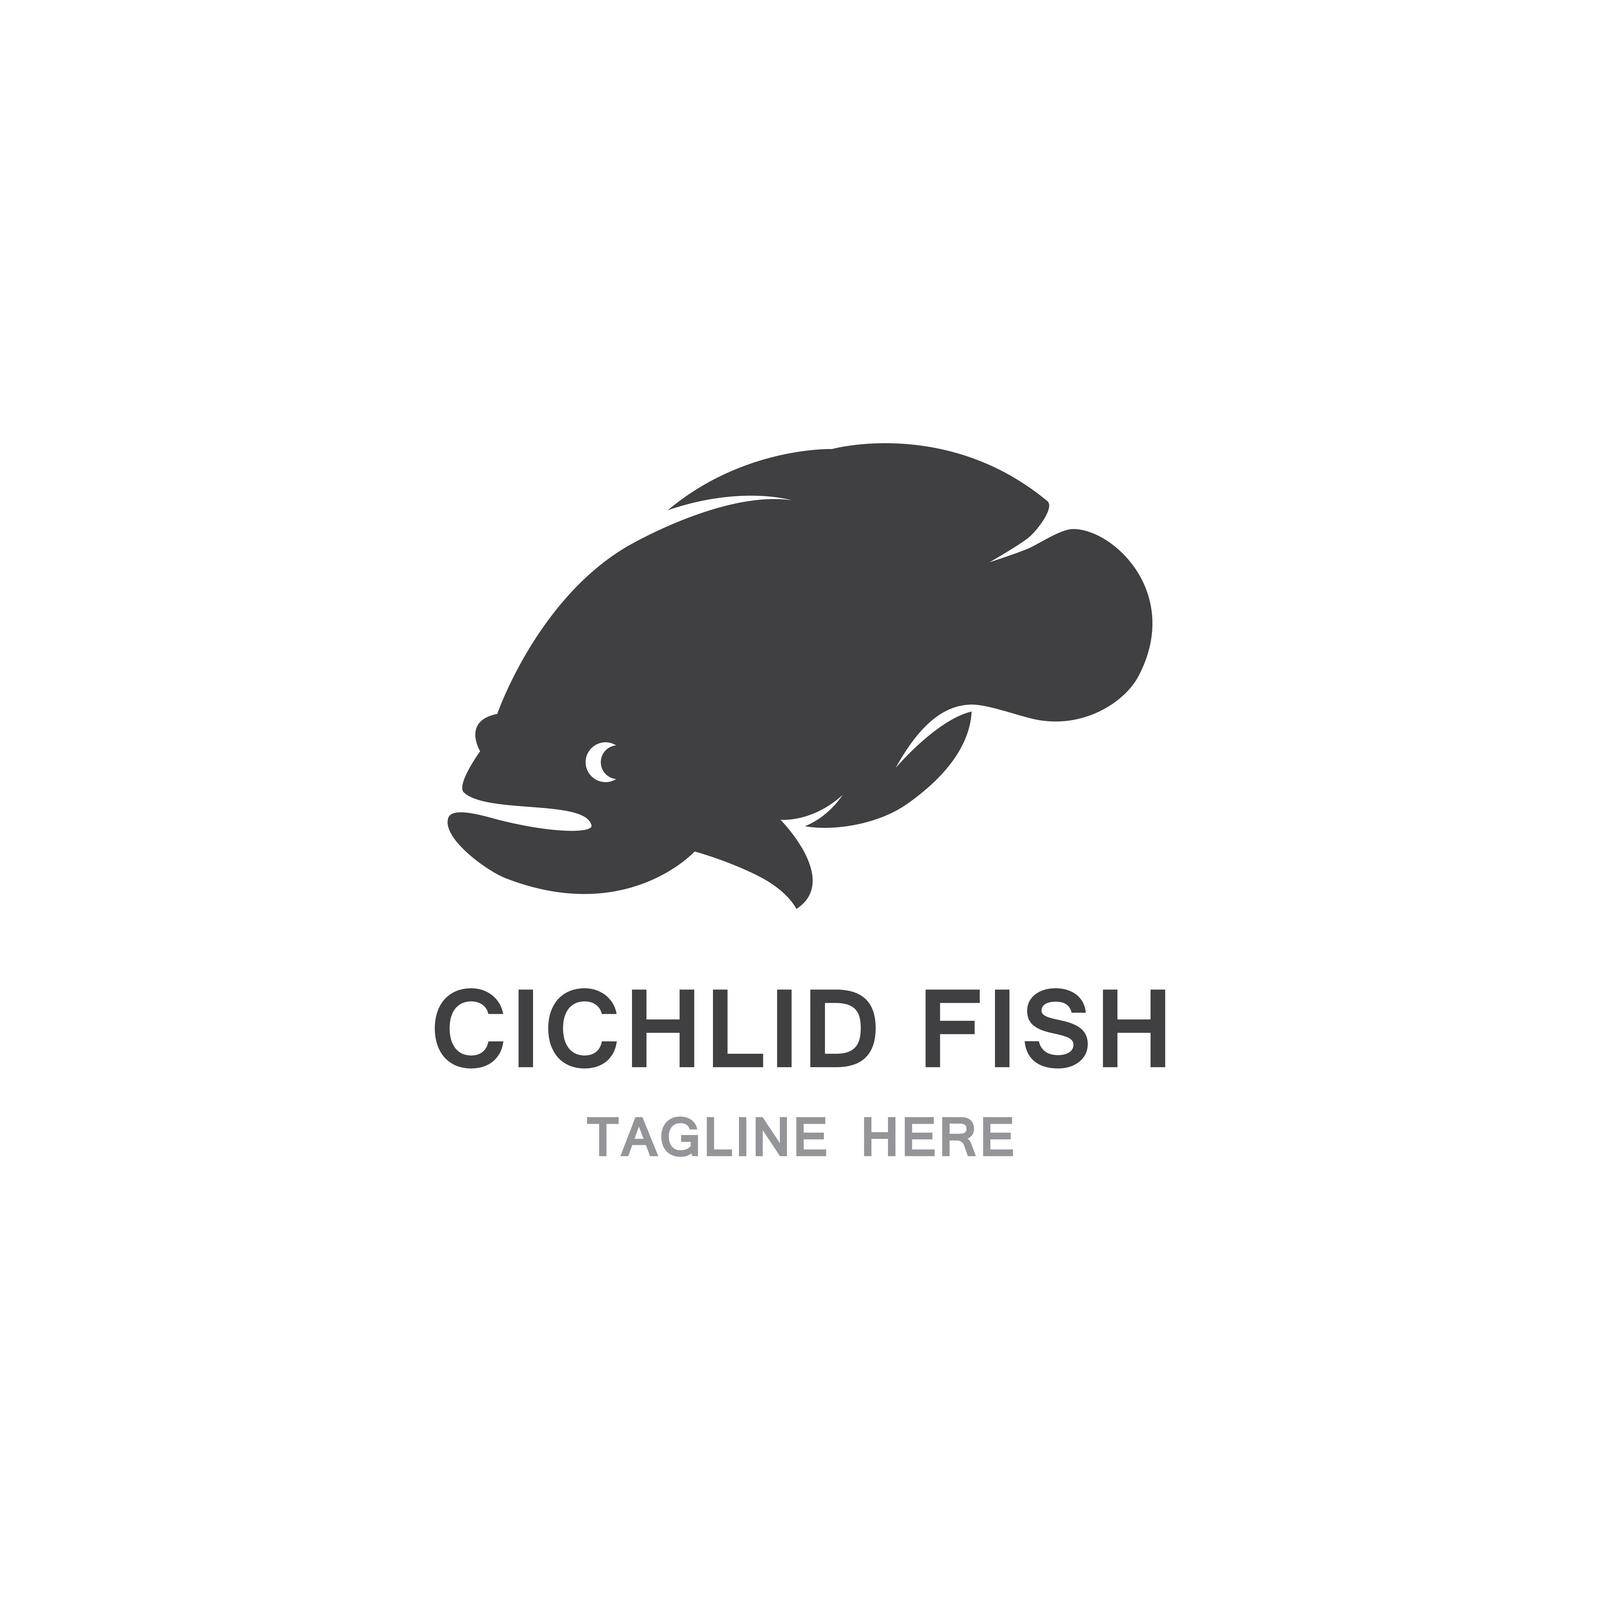 Chichlid Fish by awk